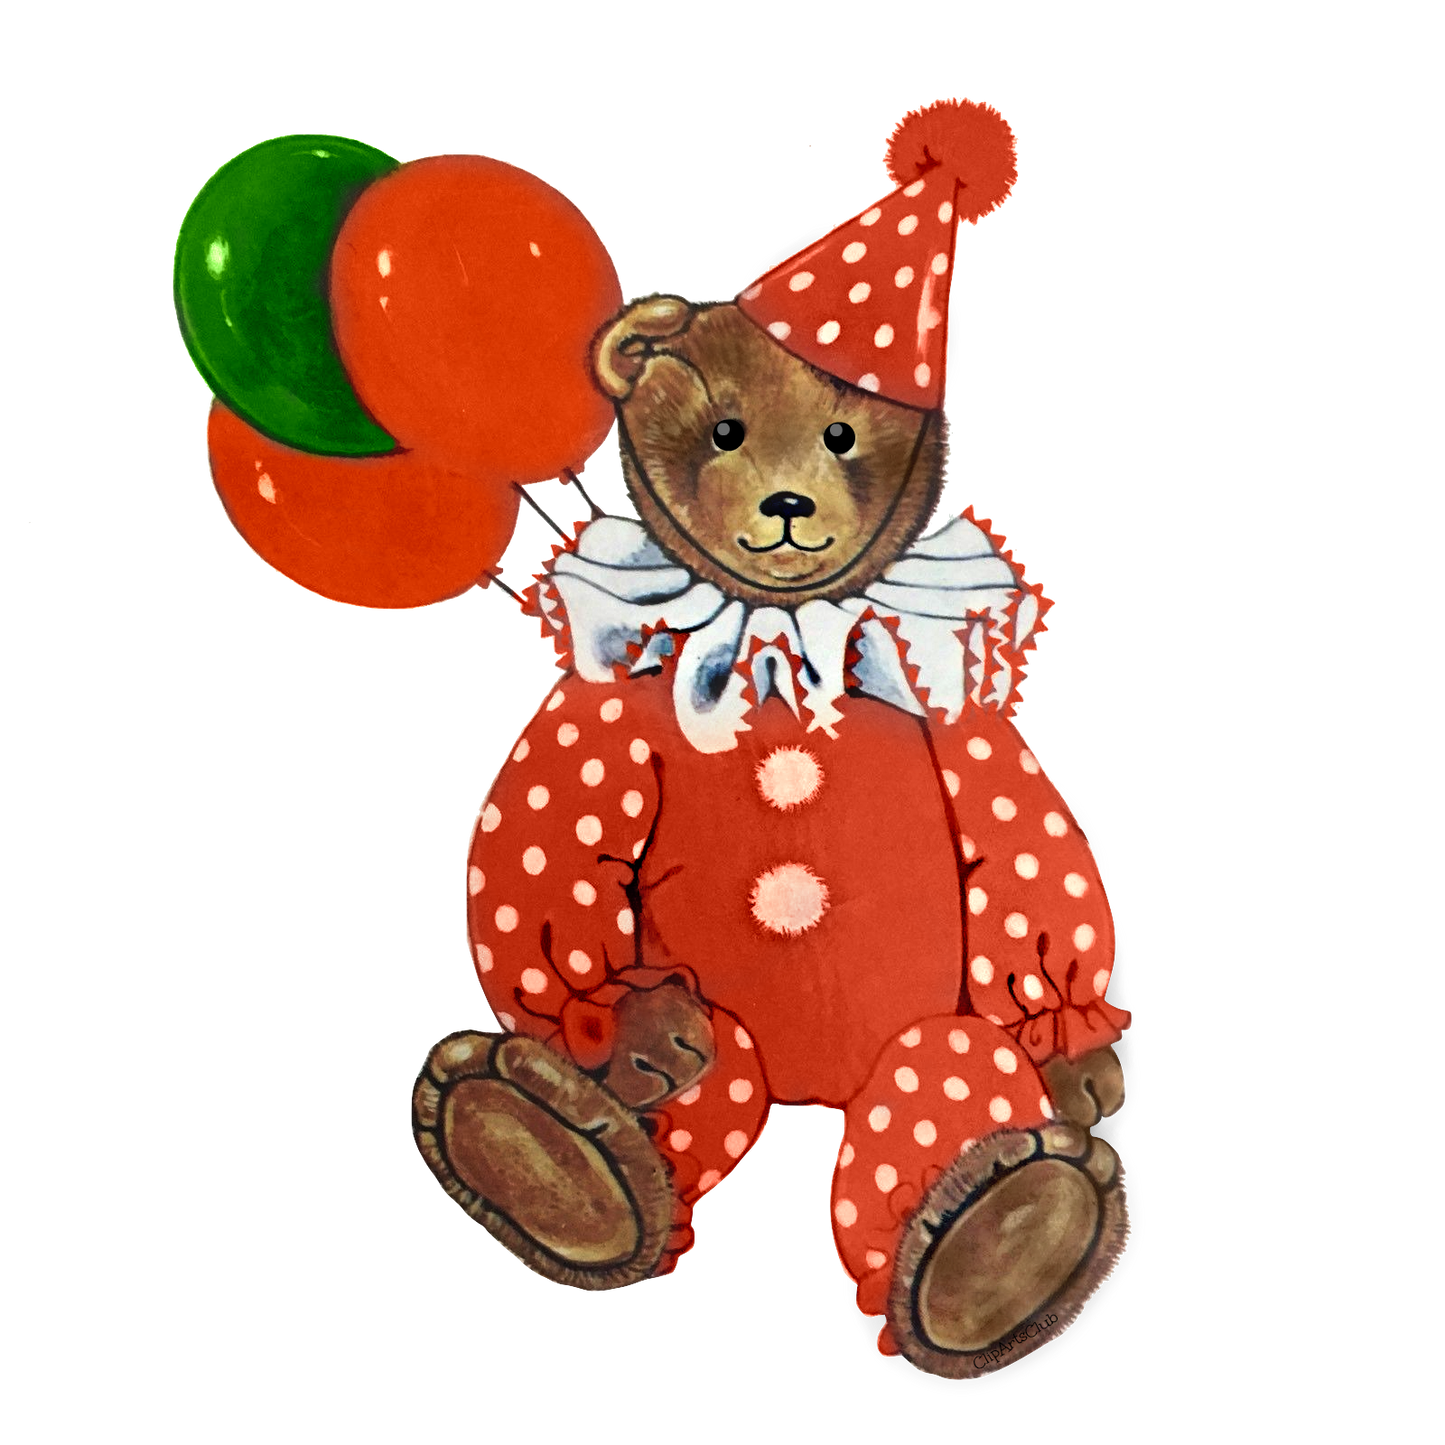 Clown Teddy Bear With Balloons